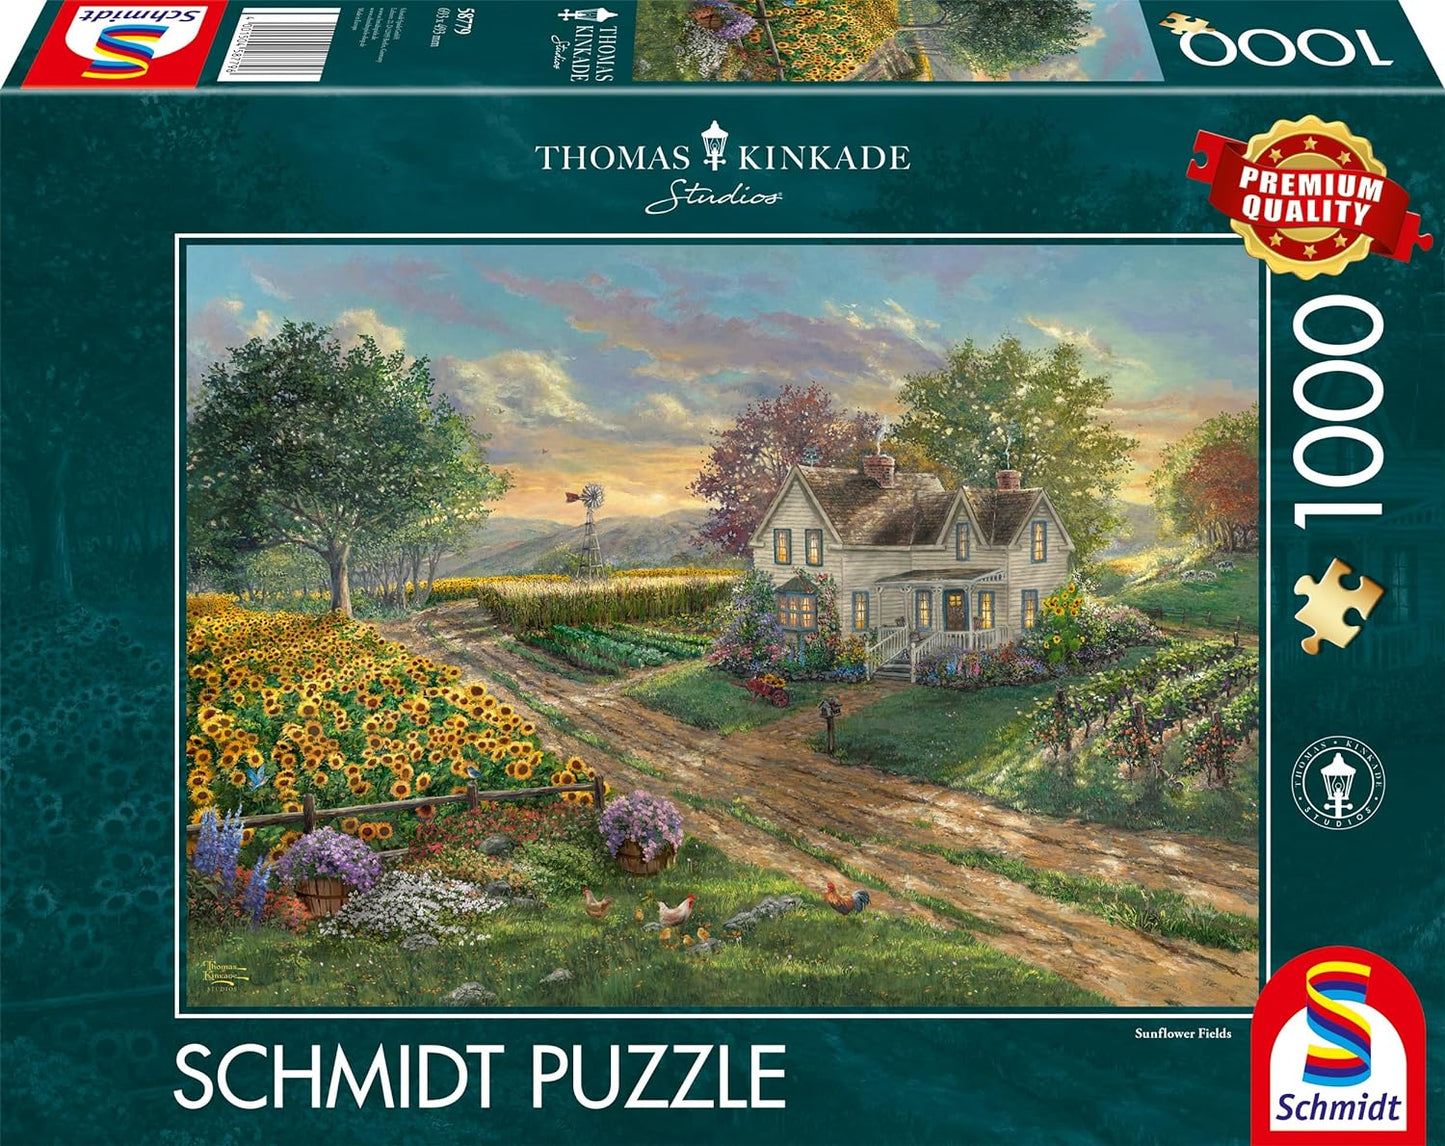 Schmidt - Thomas Kinkade: Sunflower Fields - 1000 Piece Jigsaw Puzzle